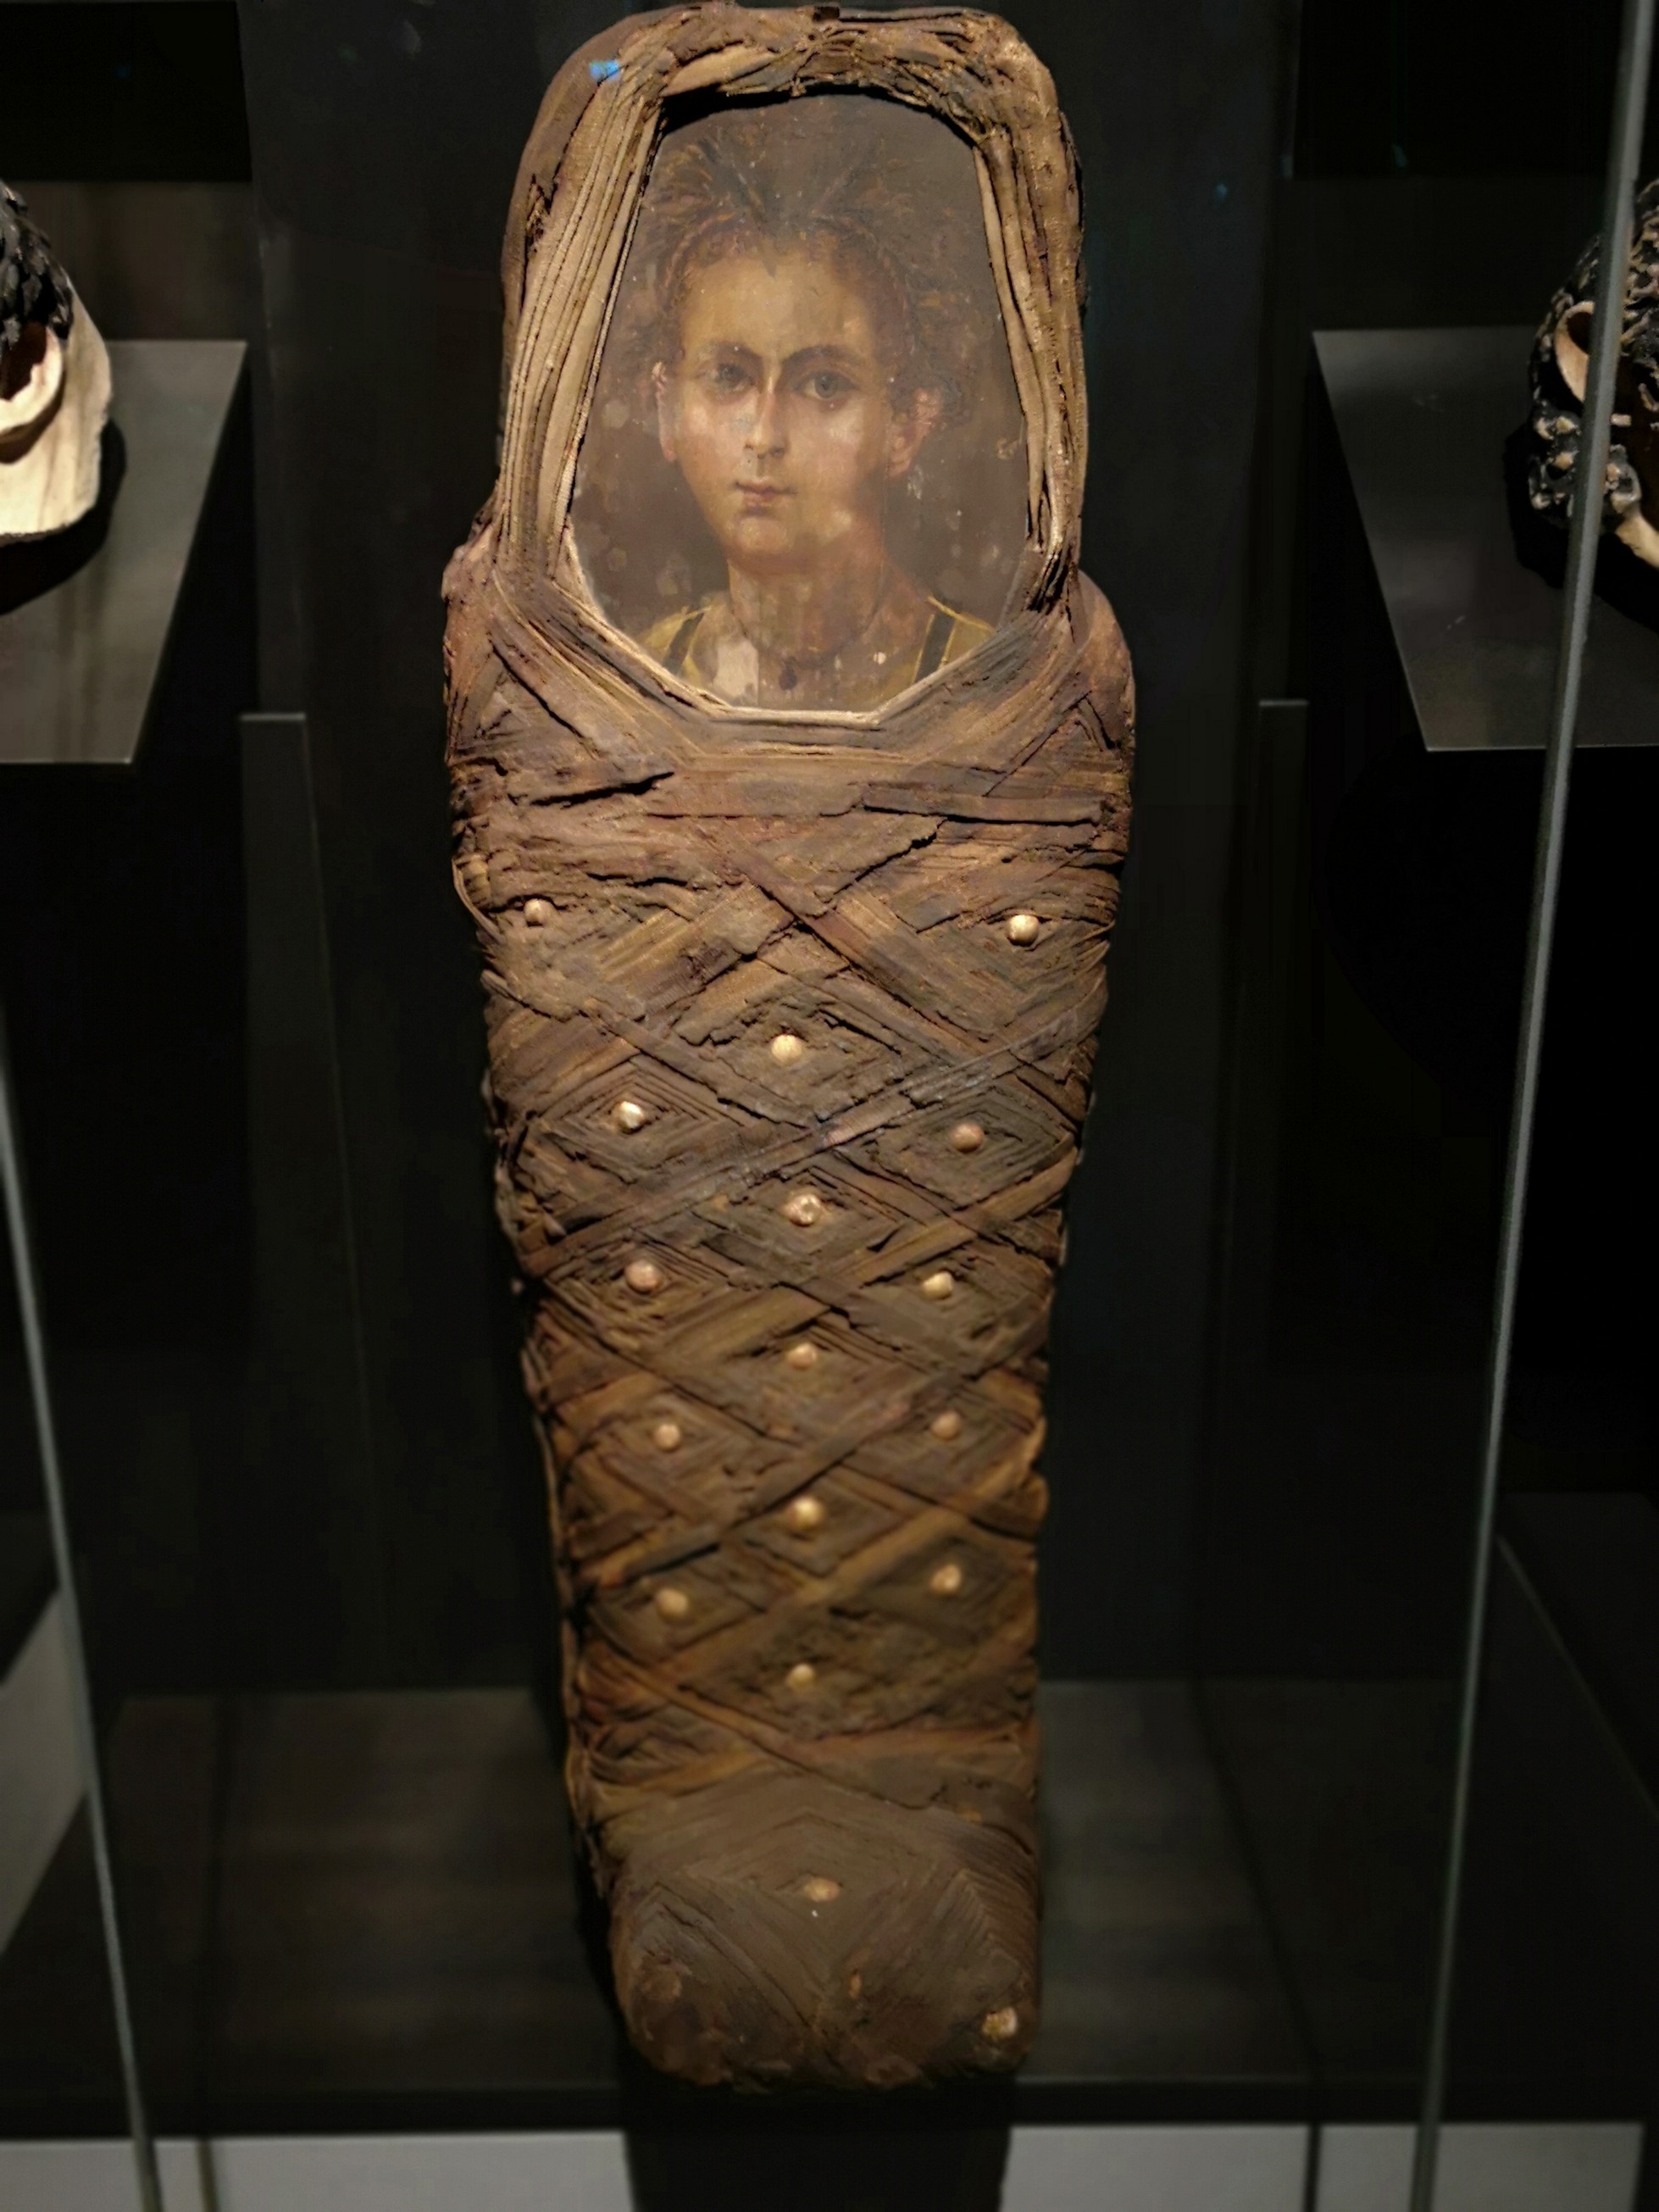 Retrato da múmia utilizado na reconstrução facial em 3D (Foto: Reprodução/Nerlich AG)